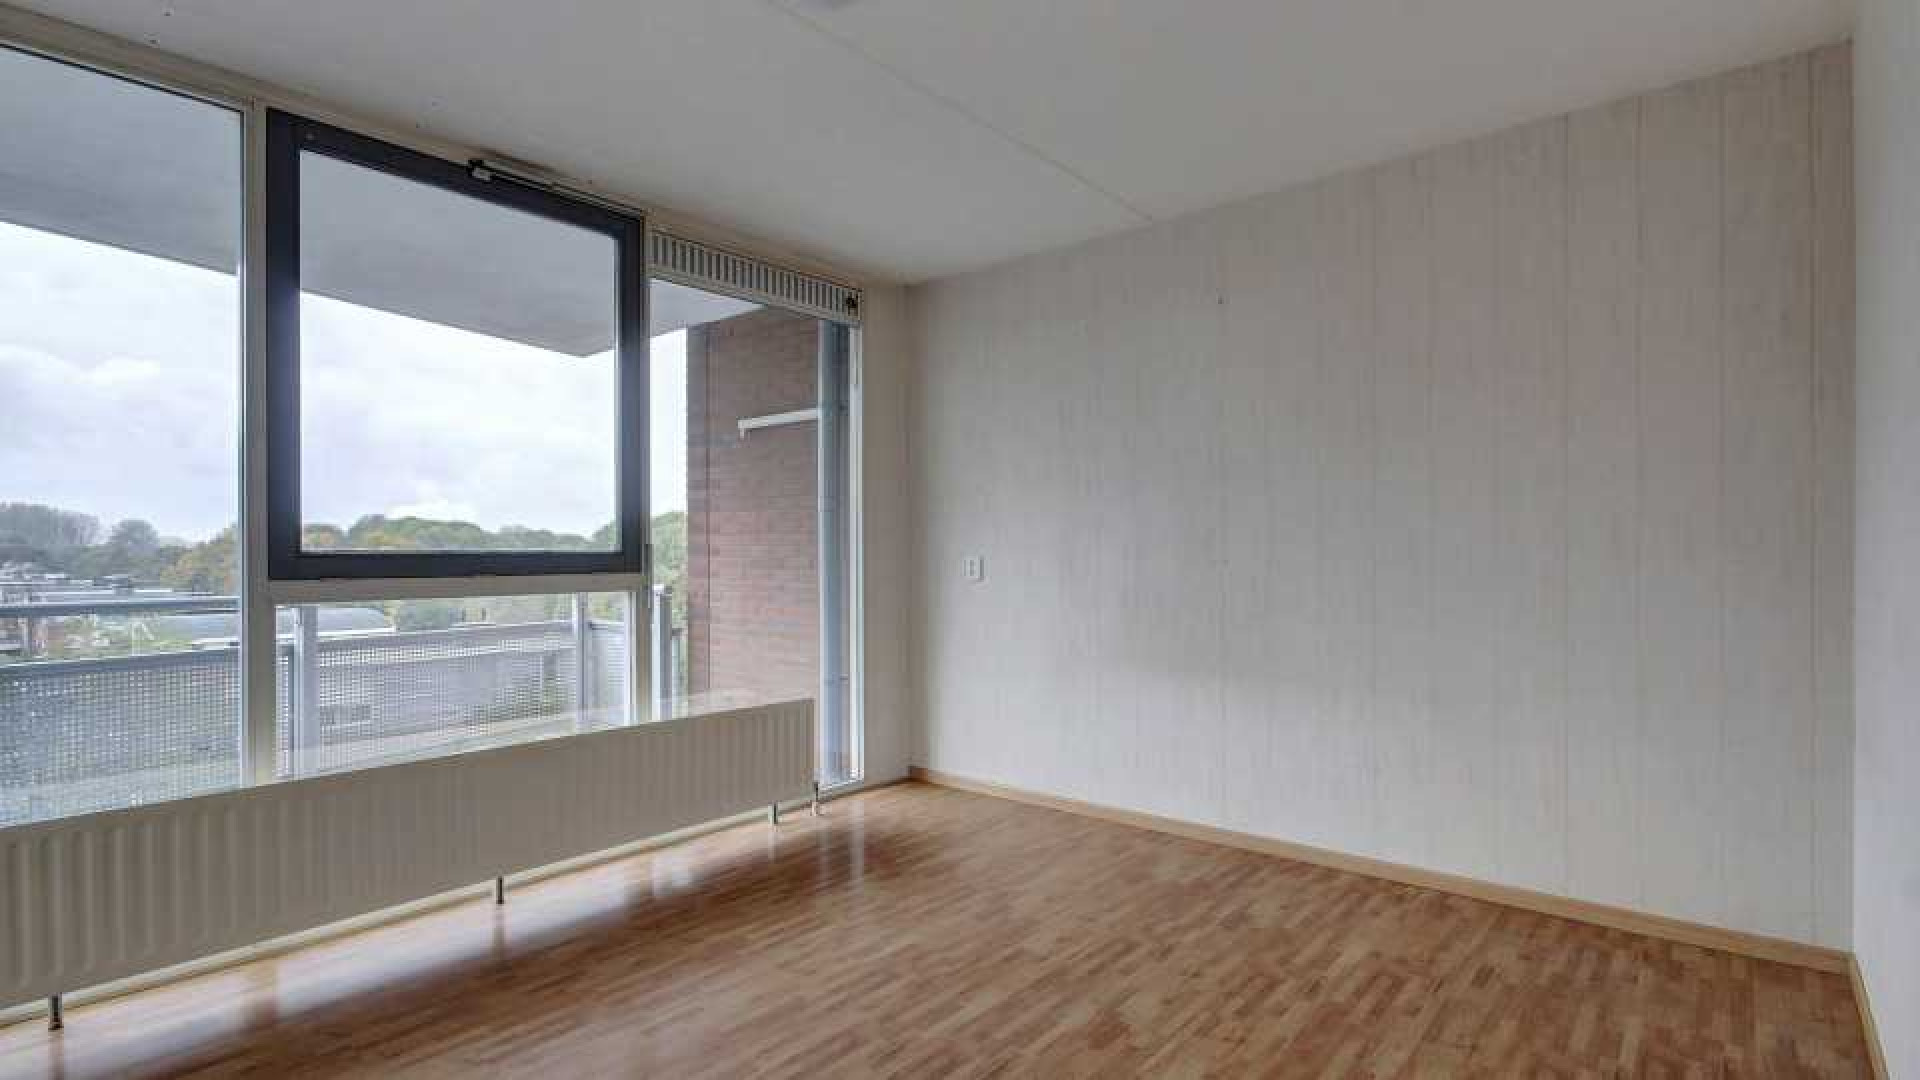 Patrick Kluivert verkoopt zijn Amsterdamse appartement. Zie foto's 10